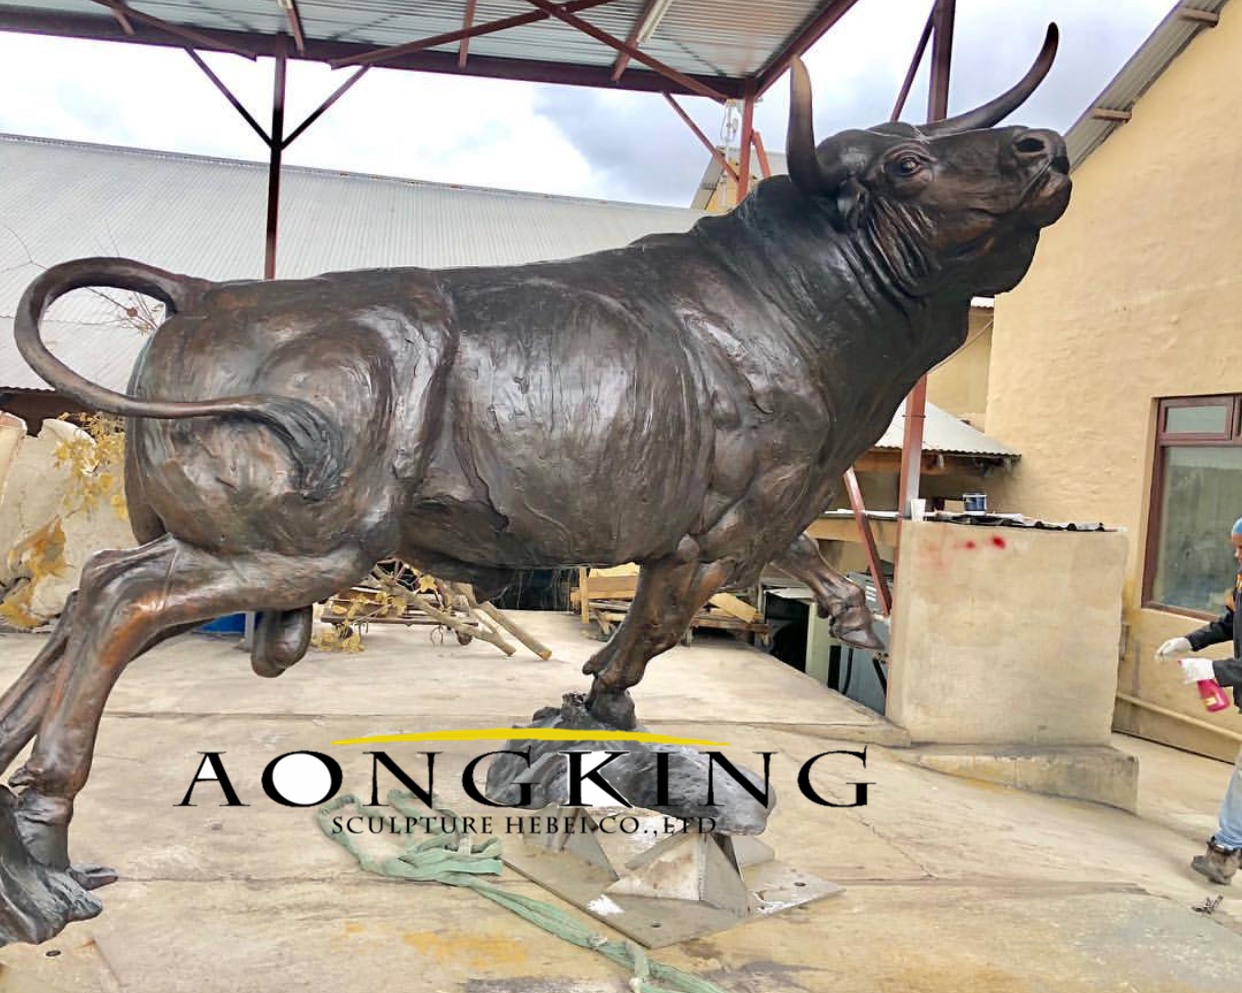 Sculpture of metal bull